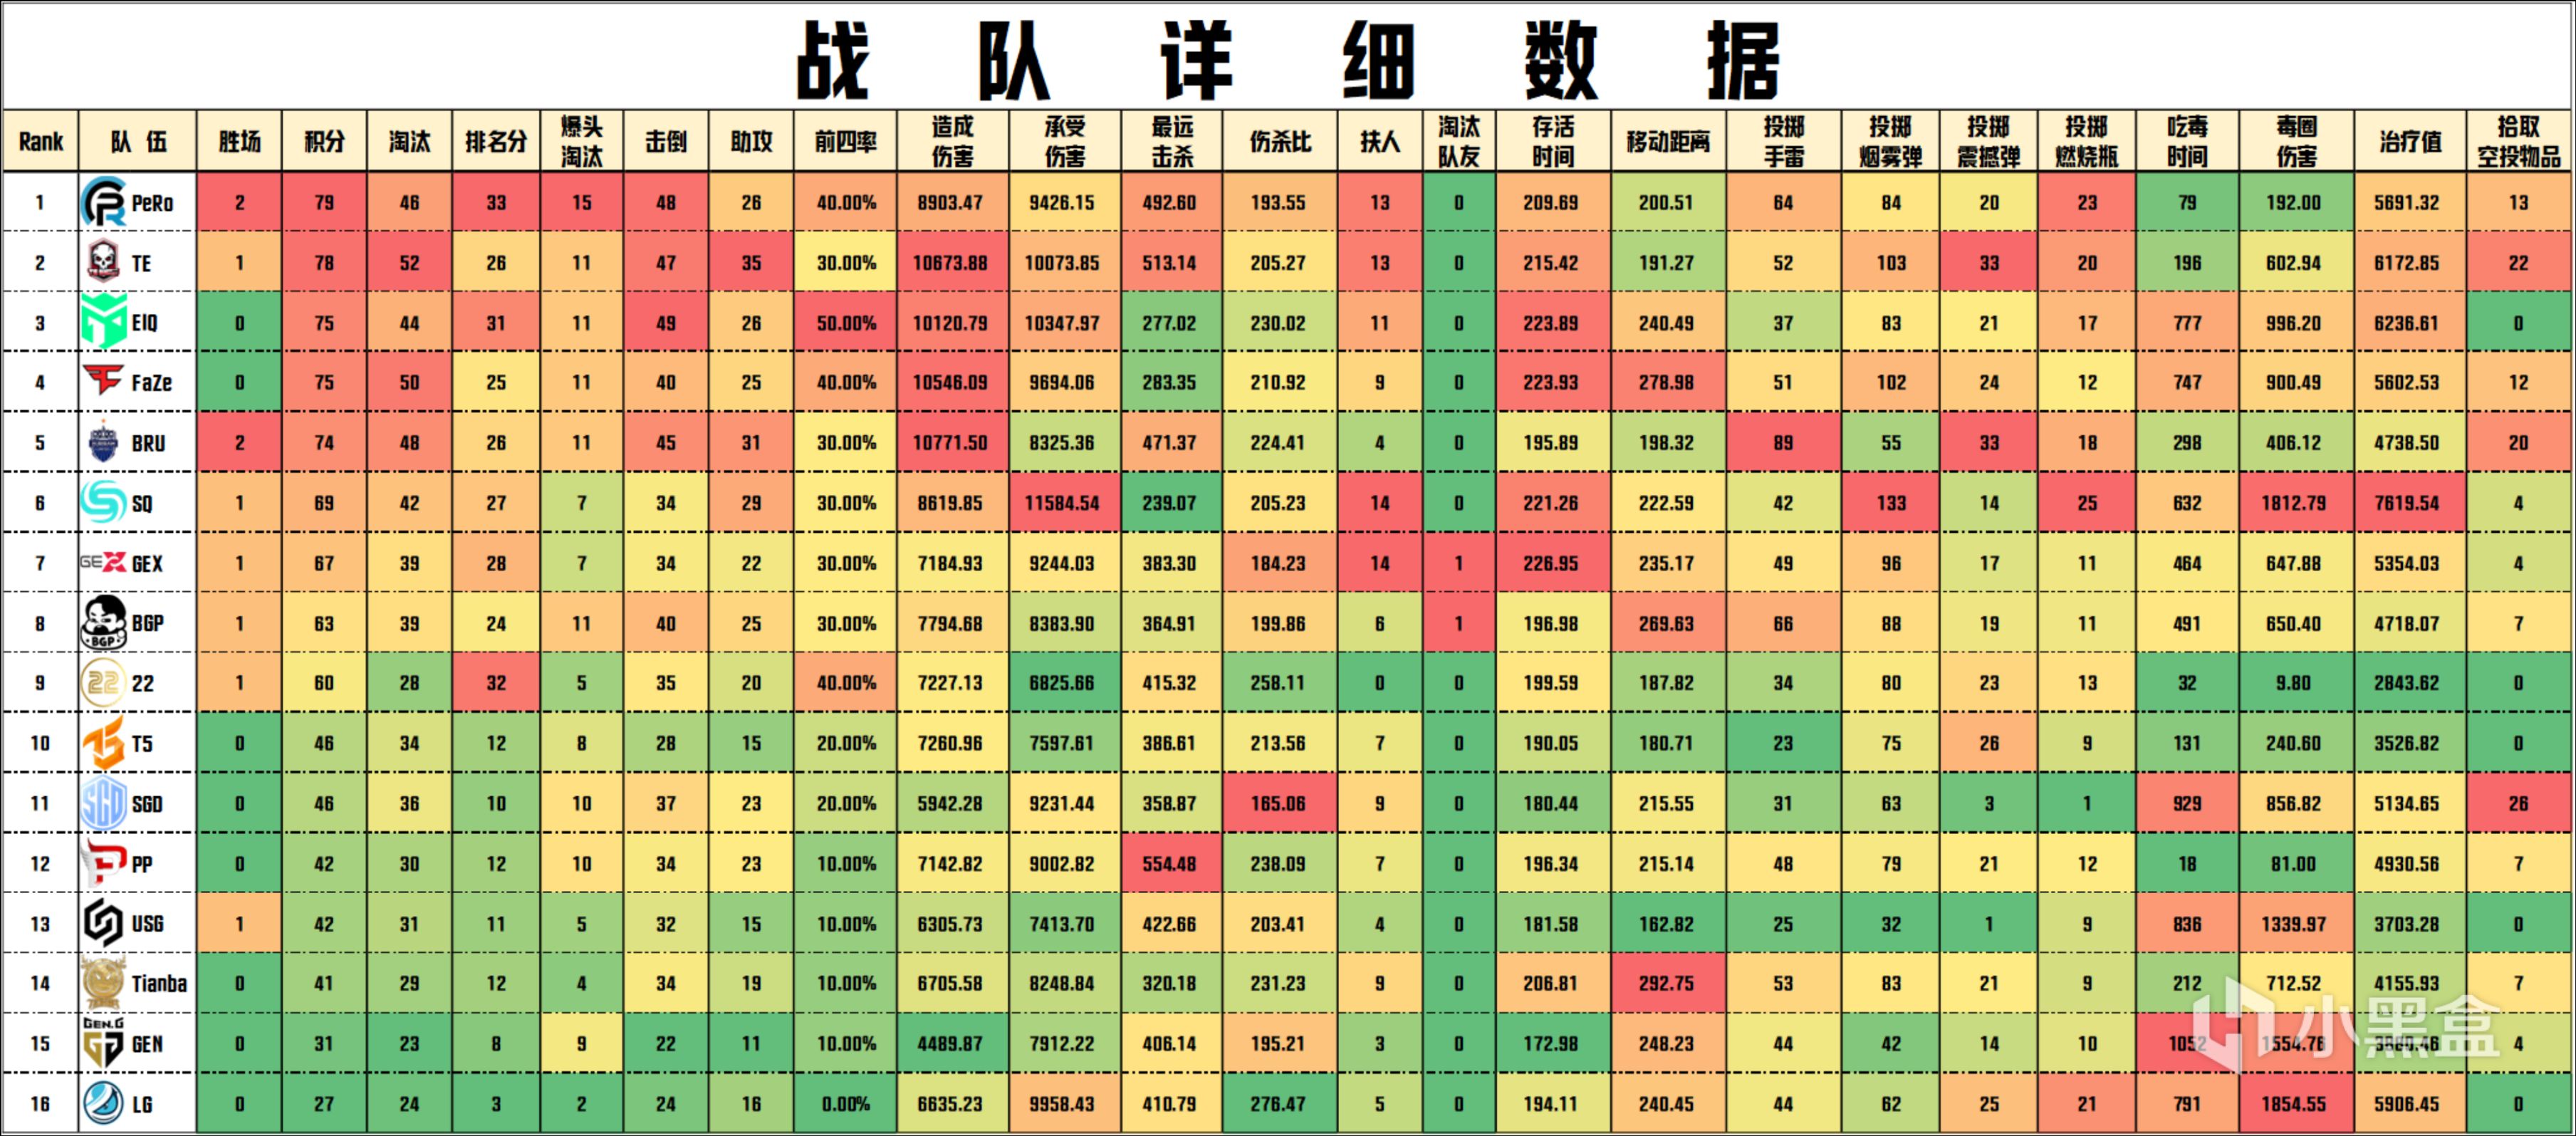 【数据流】PGC败者组阶段1:PeRo,GEX晋级阶段2,Tianba参加资格战-第2张